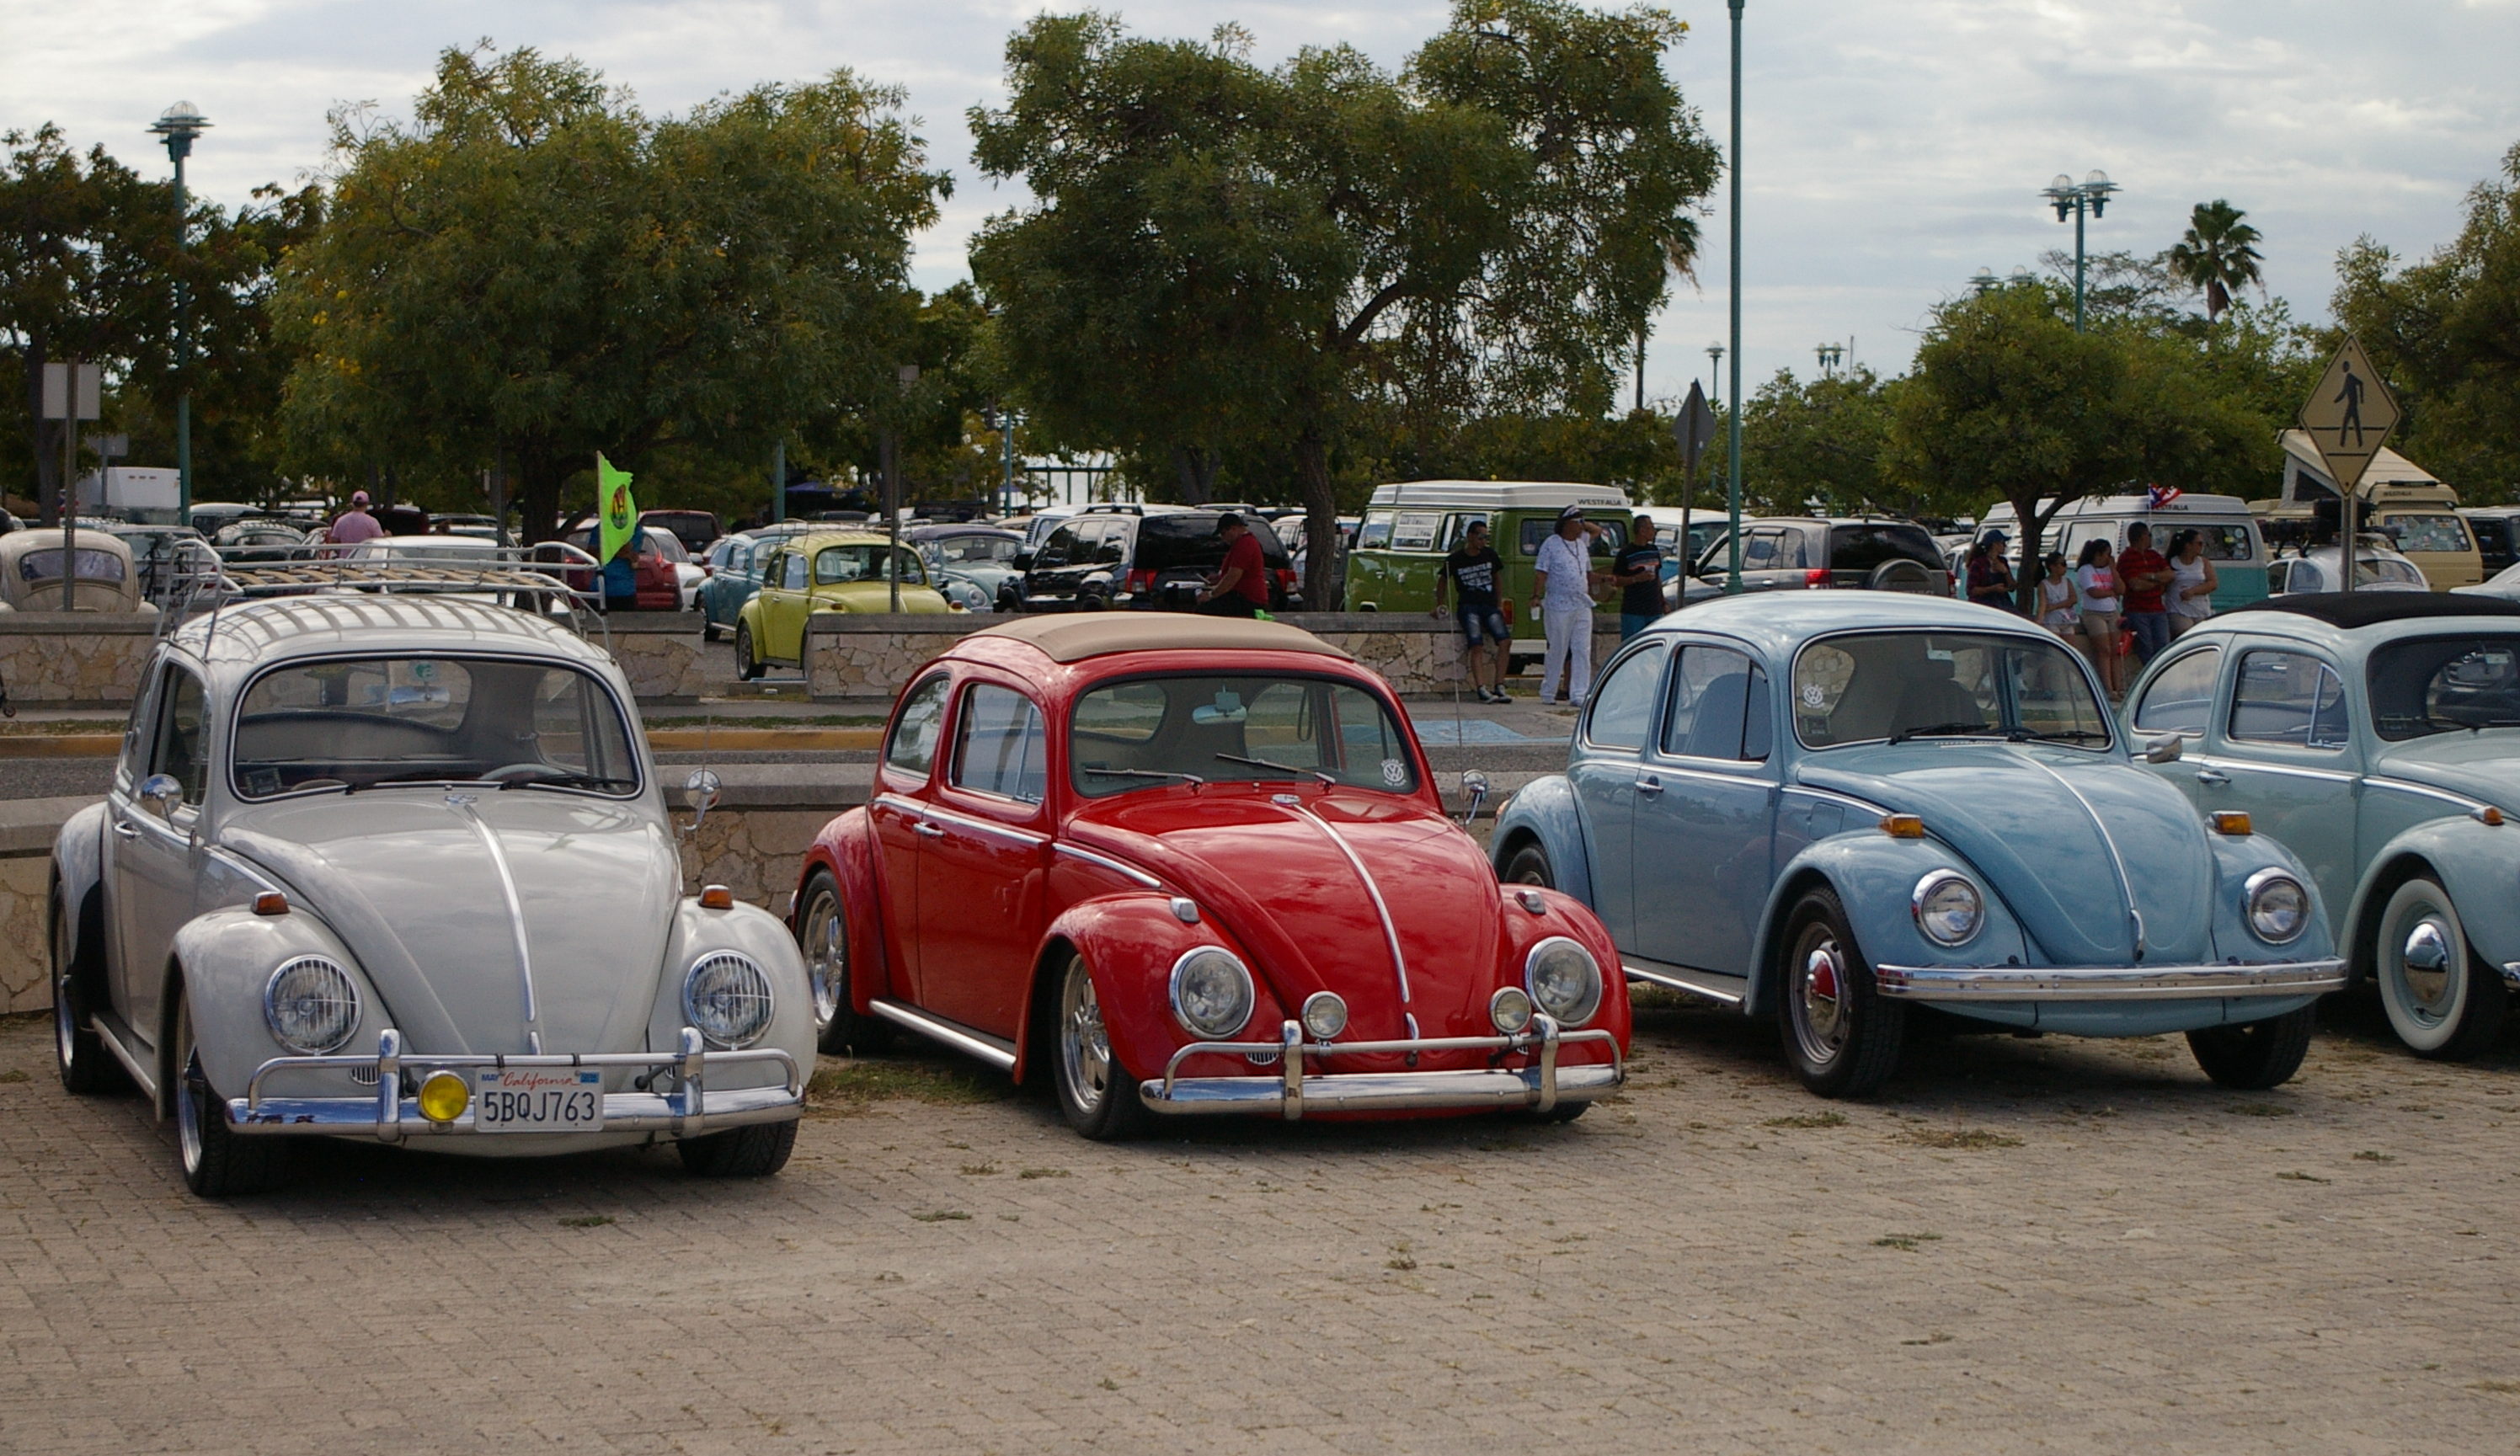 Sobre 60 vehículos de la marca Volkswagen formarán parte de la exhibición